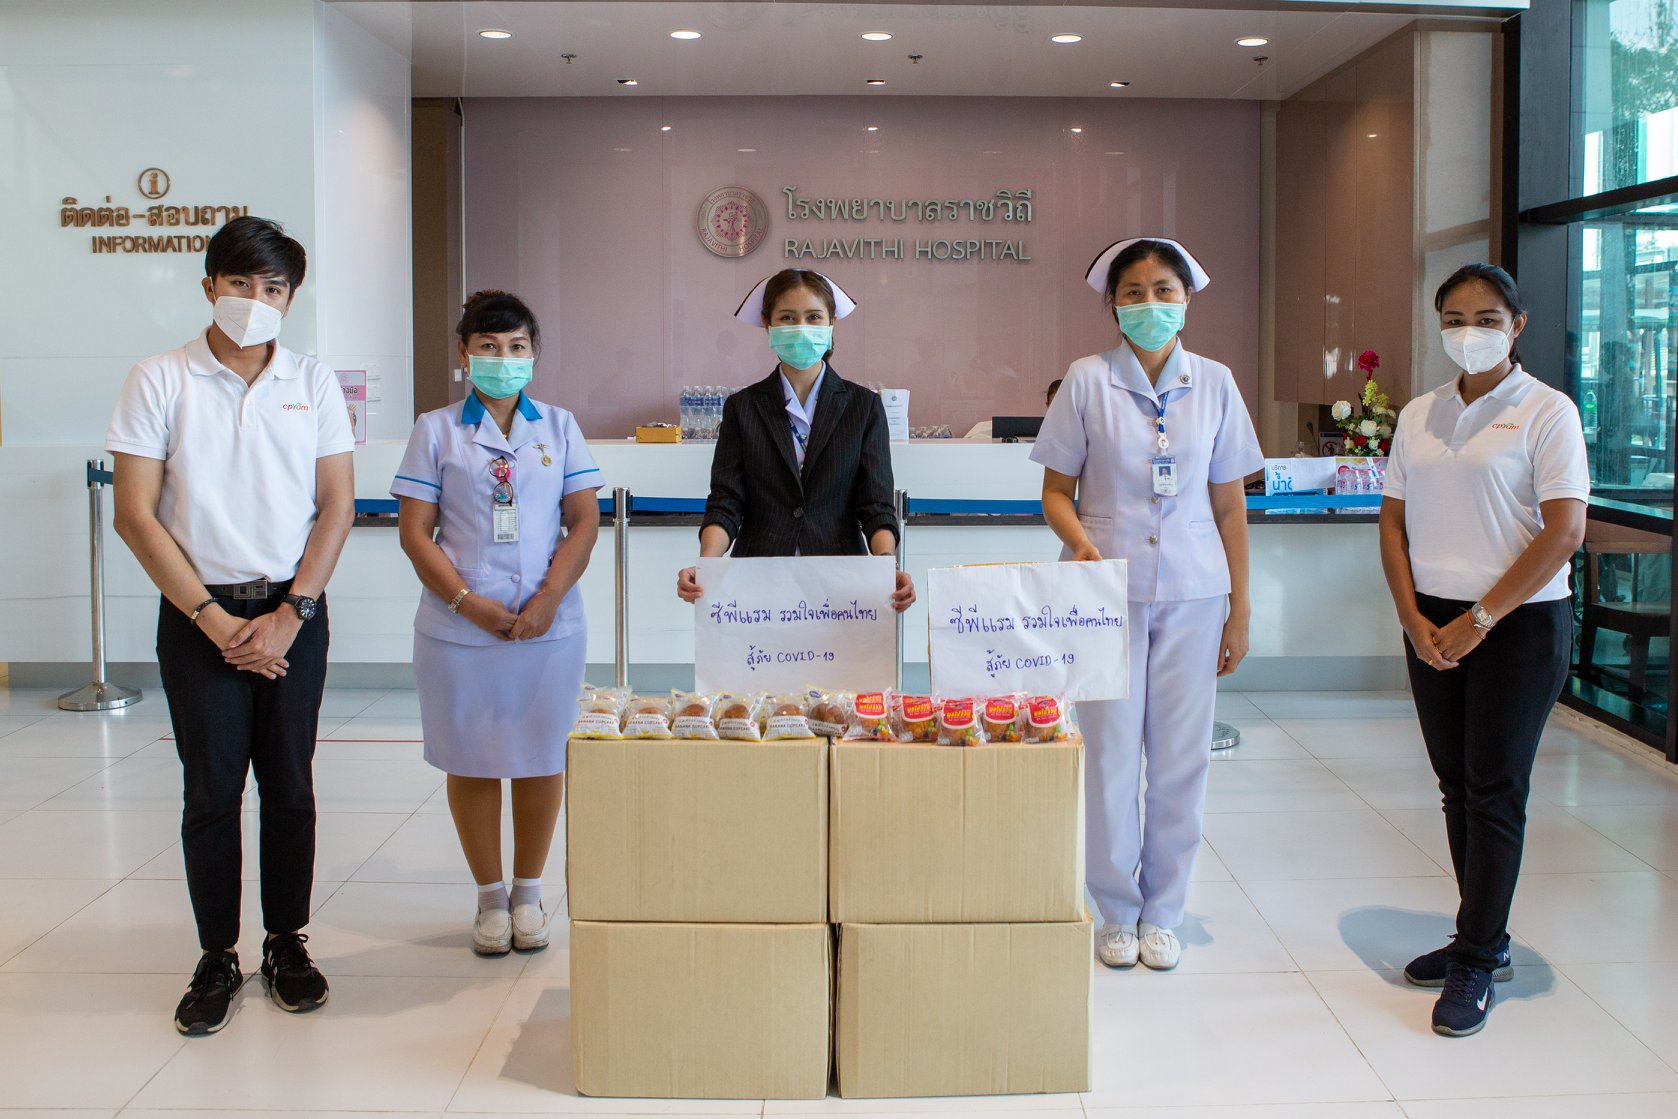 ภาพข่าว: ซีพีแรม เคียงข้างคนไทยร่วมฝ่าวิกฤตโควิด-19 มอบอาหารพร้อมรับประทานและน้ำดื่มให้บุคลากรทางการแพทย์ - สาธารณสุข อย่างต่อเนื่อง